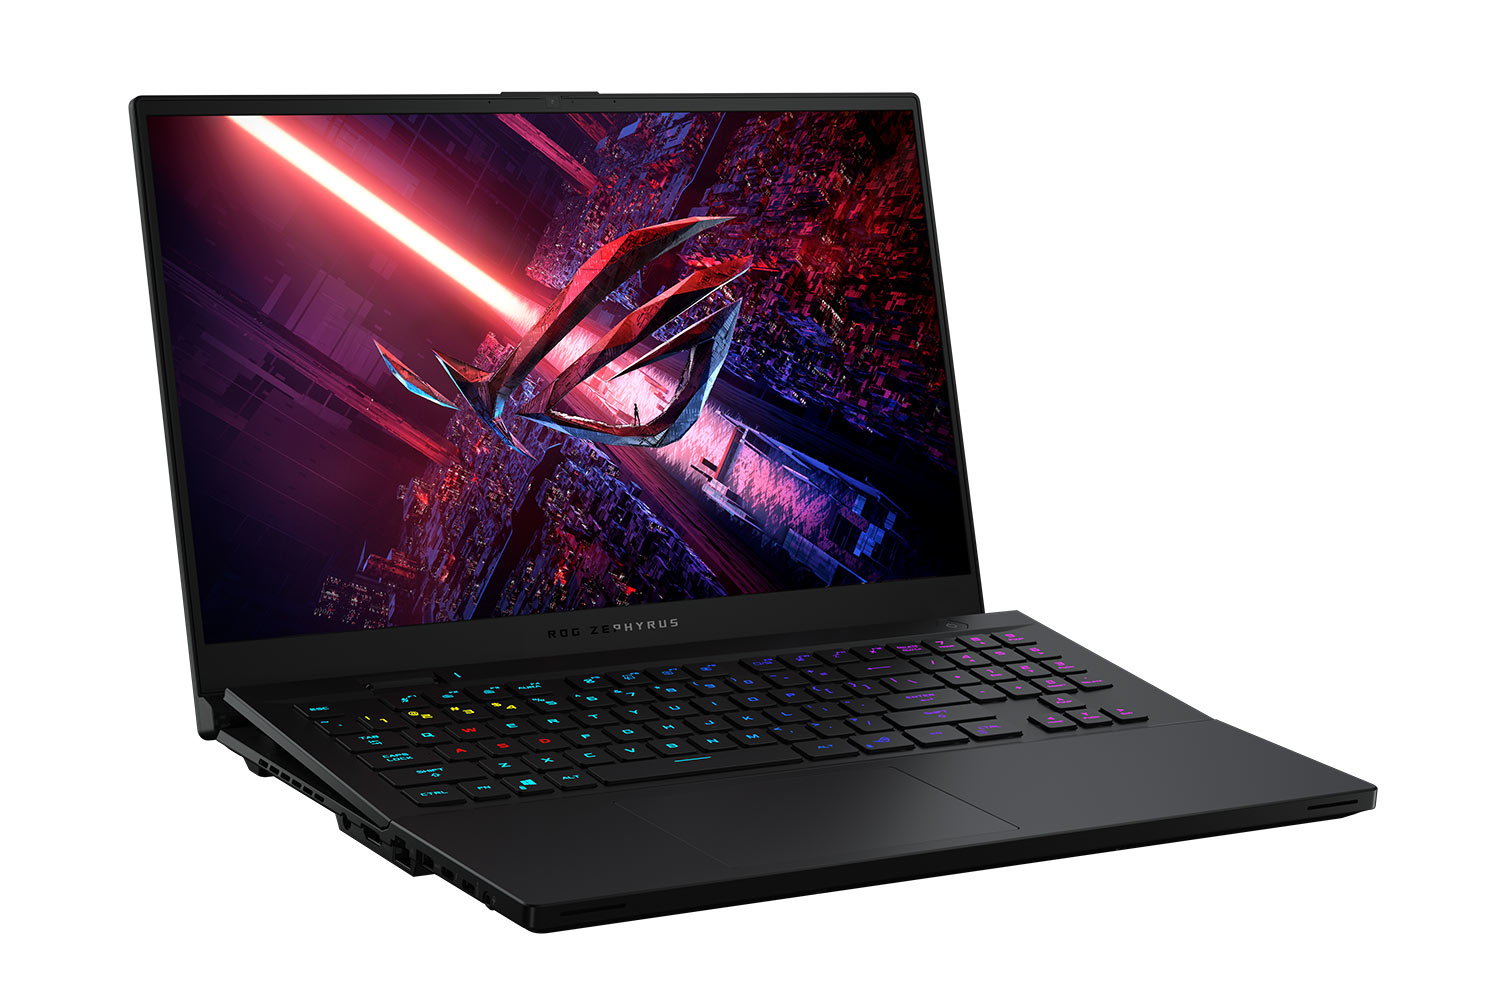 ROG anunță laptopul premium Zephyrus S17 cu tastatură rabatabilă pentru gaming